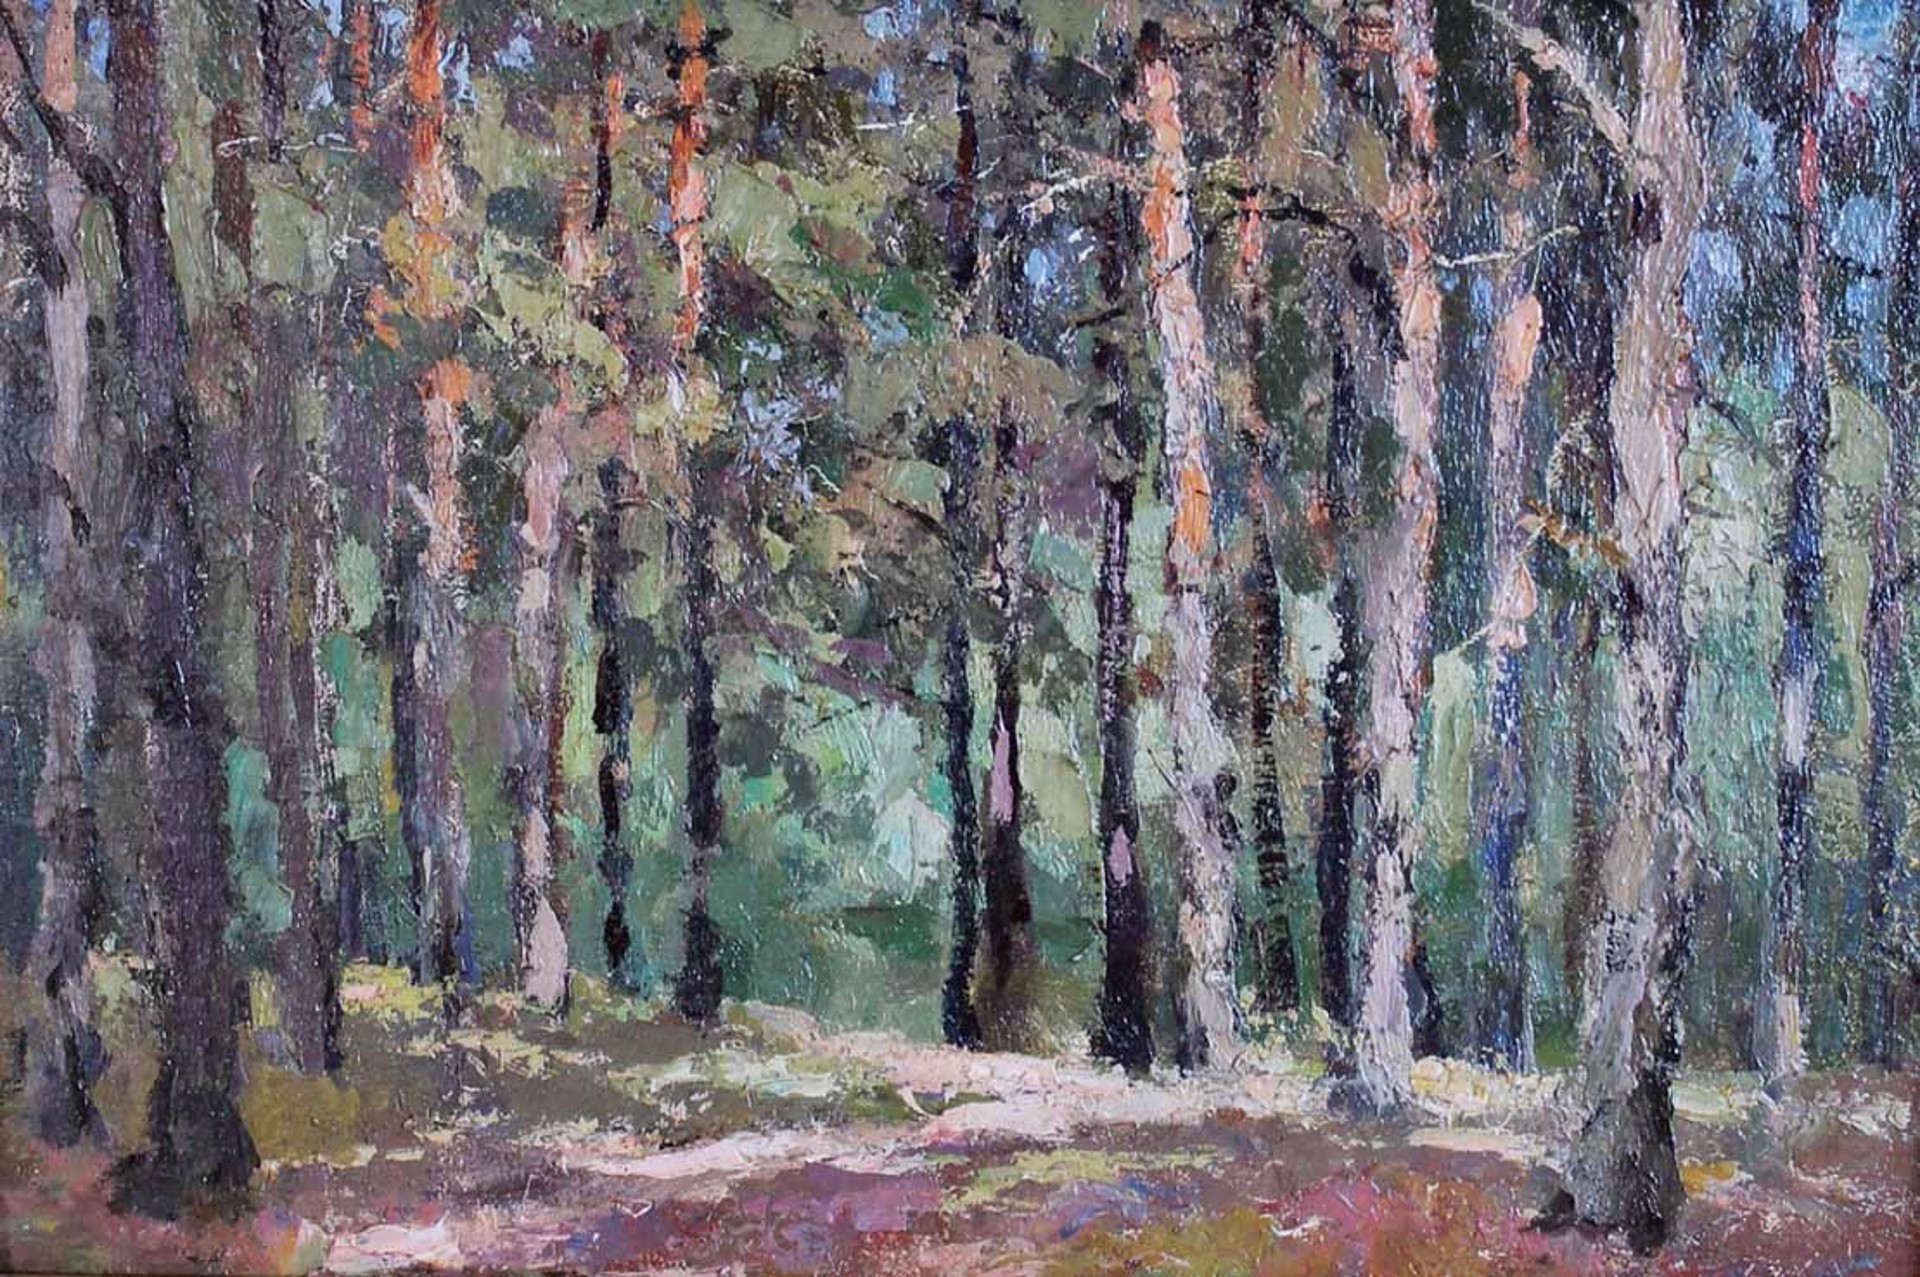 Edge of Forest by Vladimir Korobov